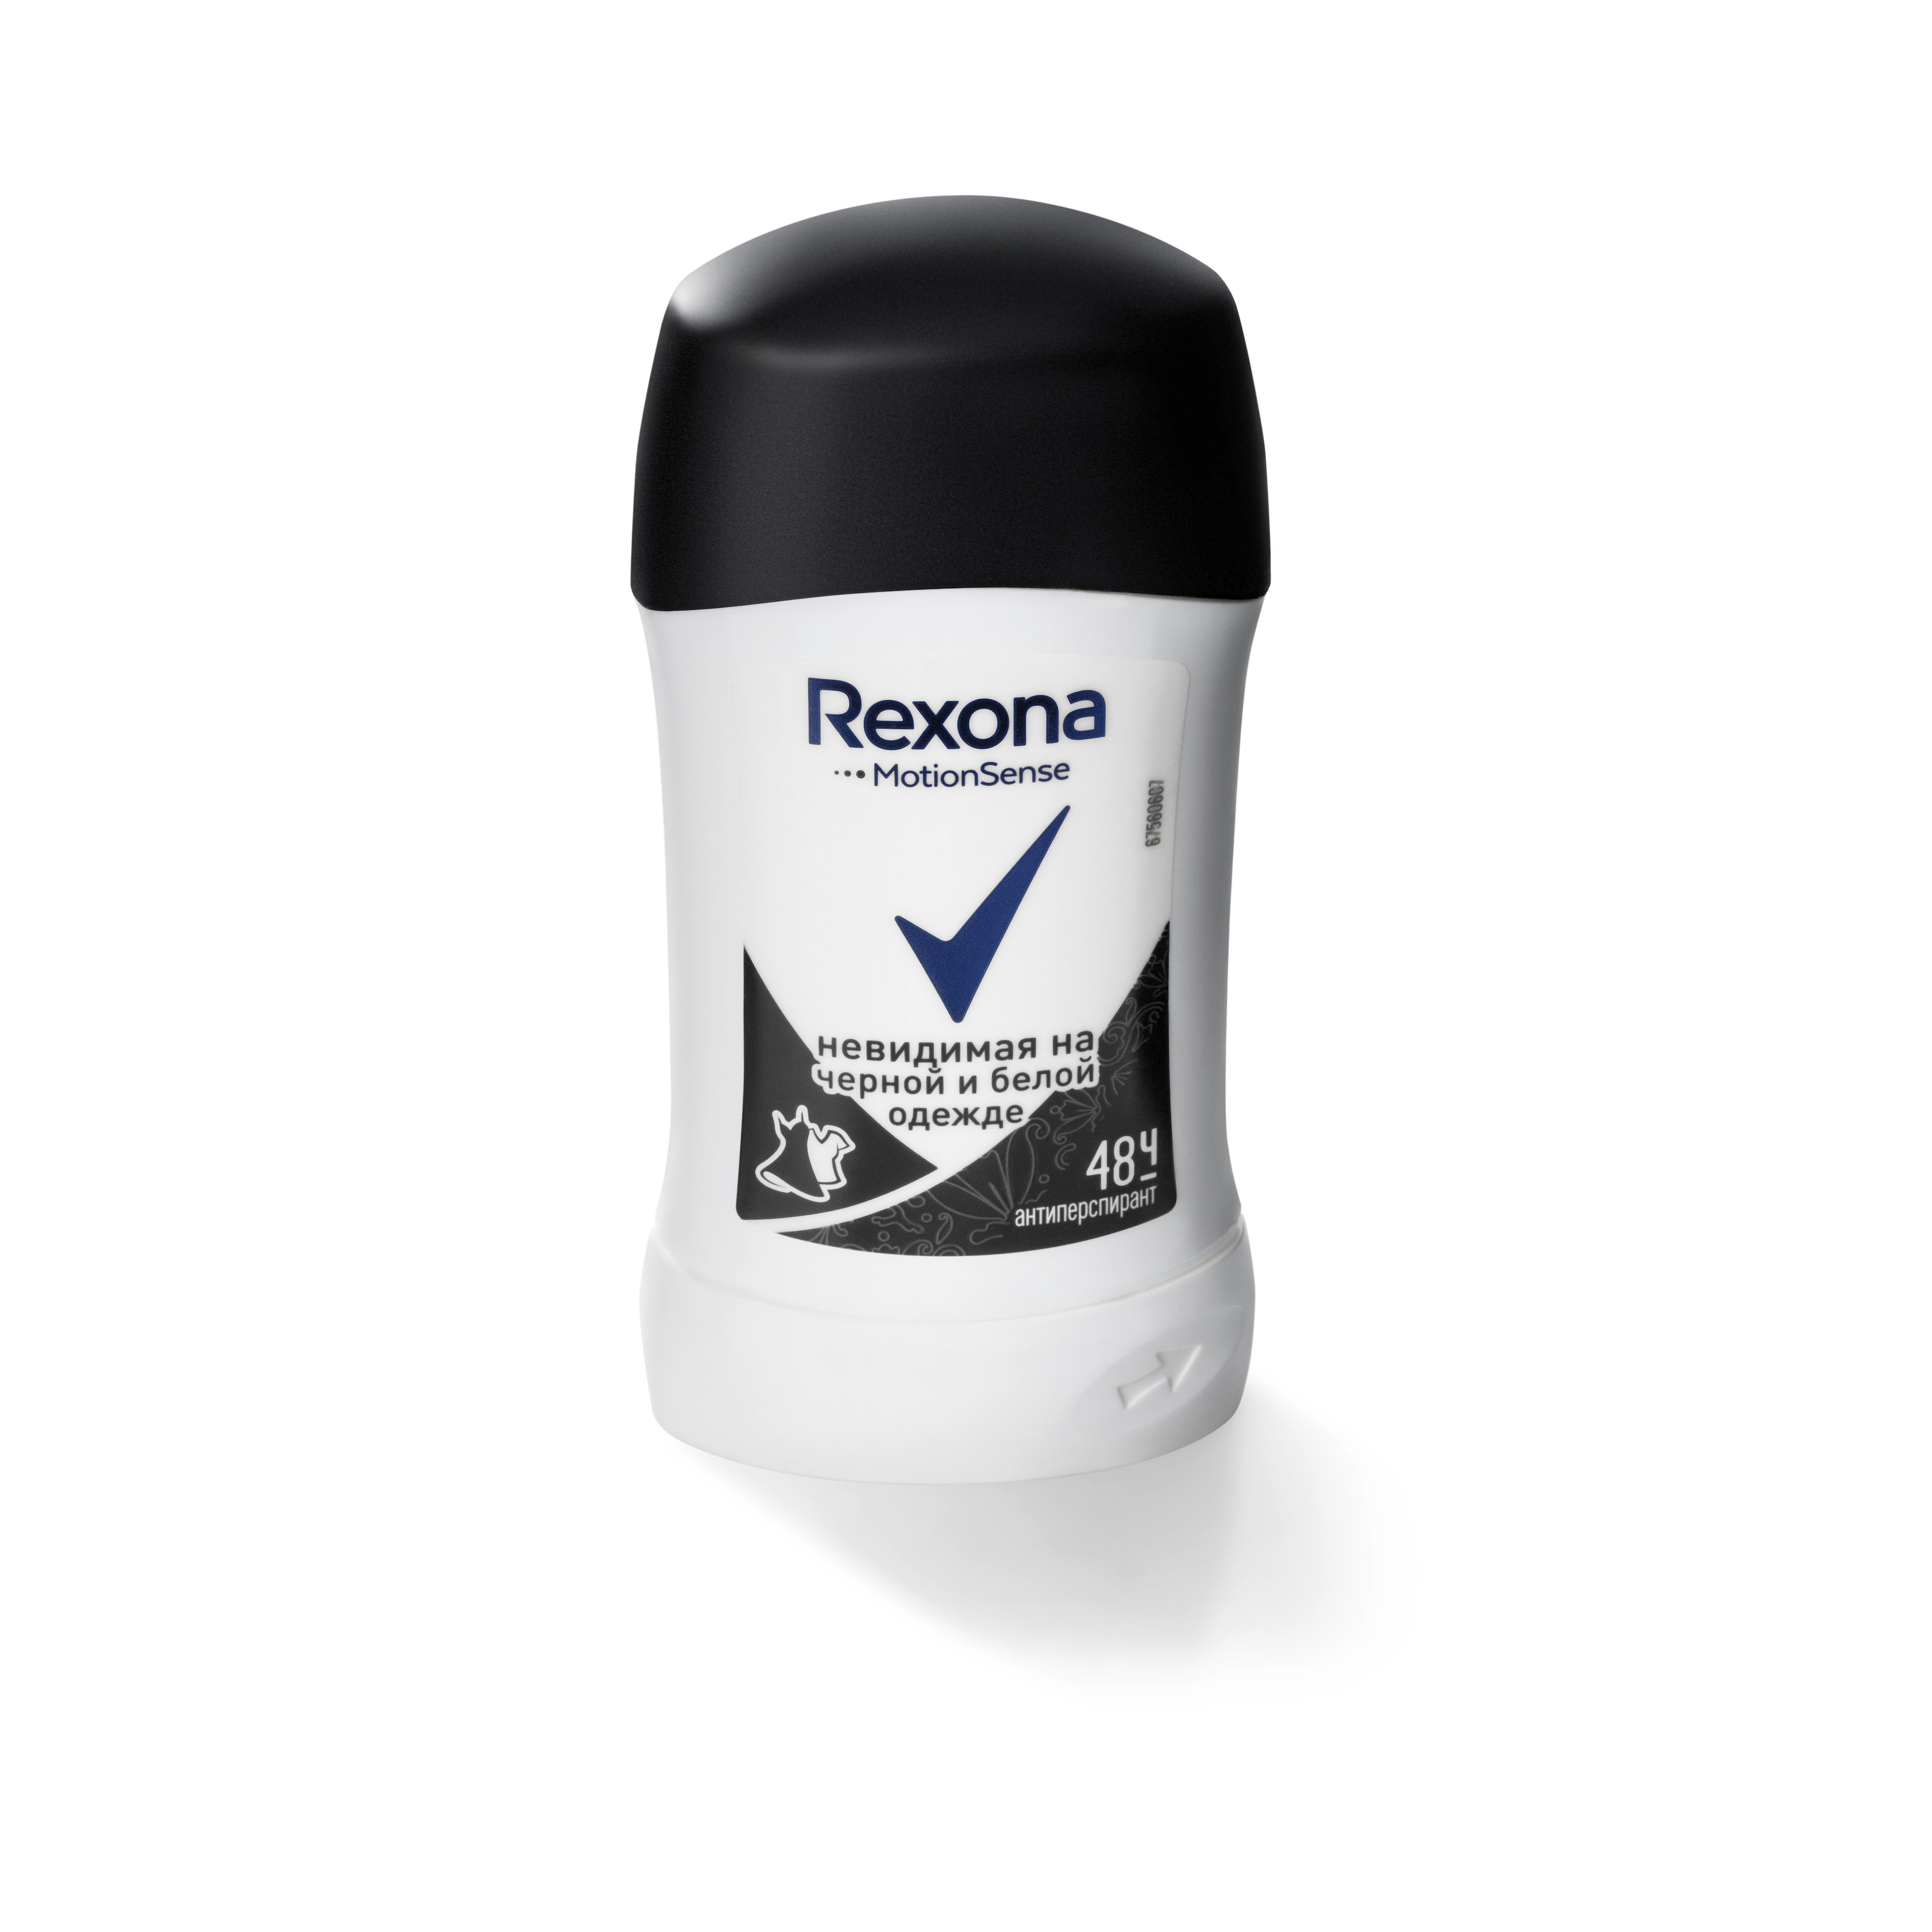 Дезодорант-антиперспирант Rexona Невидимый на черном и белом, 40 мл - фото 3